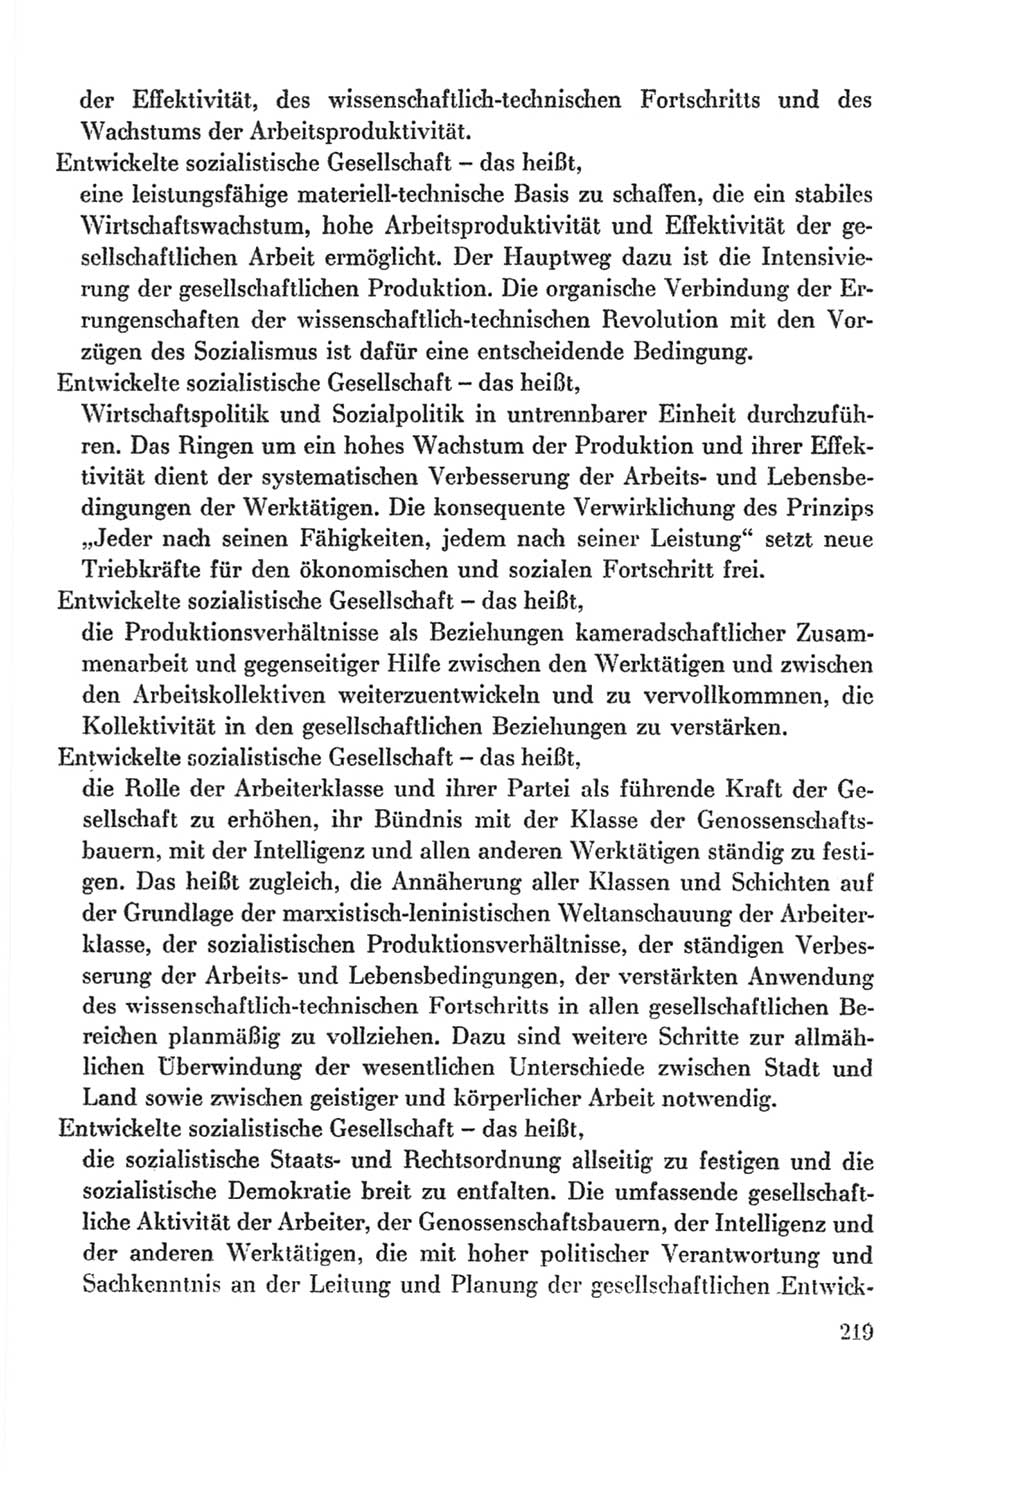 Protokoll der Verhandlungen des Ⅸ. Parteitages der Sozialistischen Einheitspartei Deutschlands (SED) [Deutsche Demokratische Republik (DDR)] 1976, Band 2, Seite 219 (Prot. Verh. Ⅸ. PT SED DDR 1976, Bd. 2, S. 219)